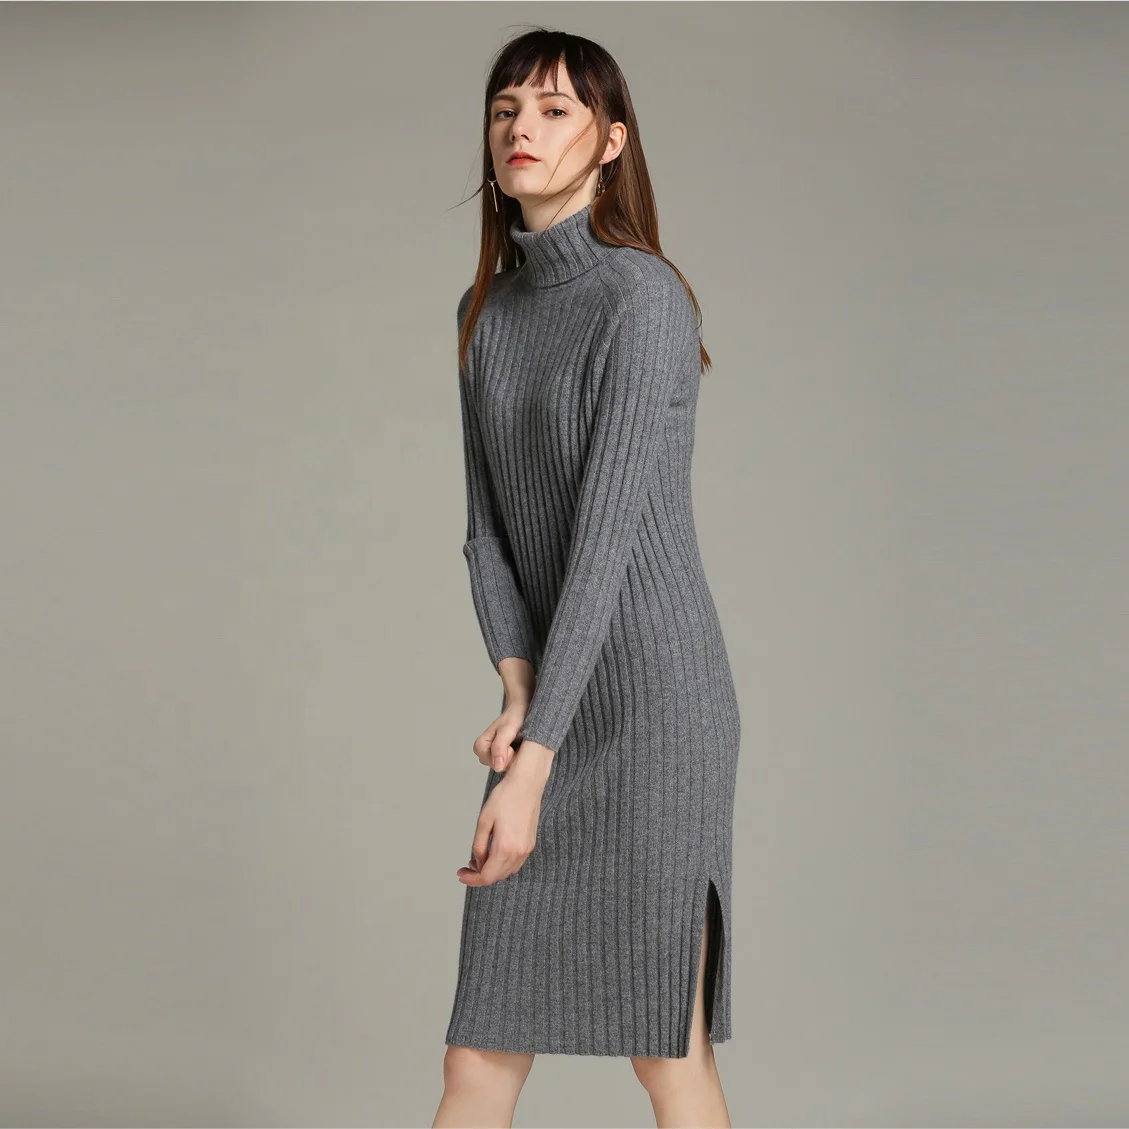 Пуловер вязаный ребристый сбоку сплит водолазка для женщин длинный свитер платье